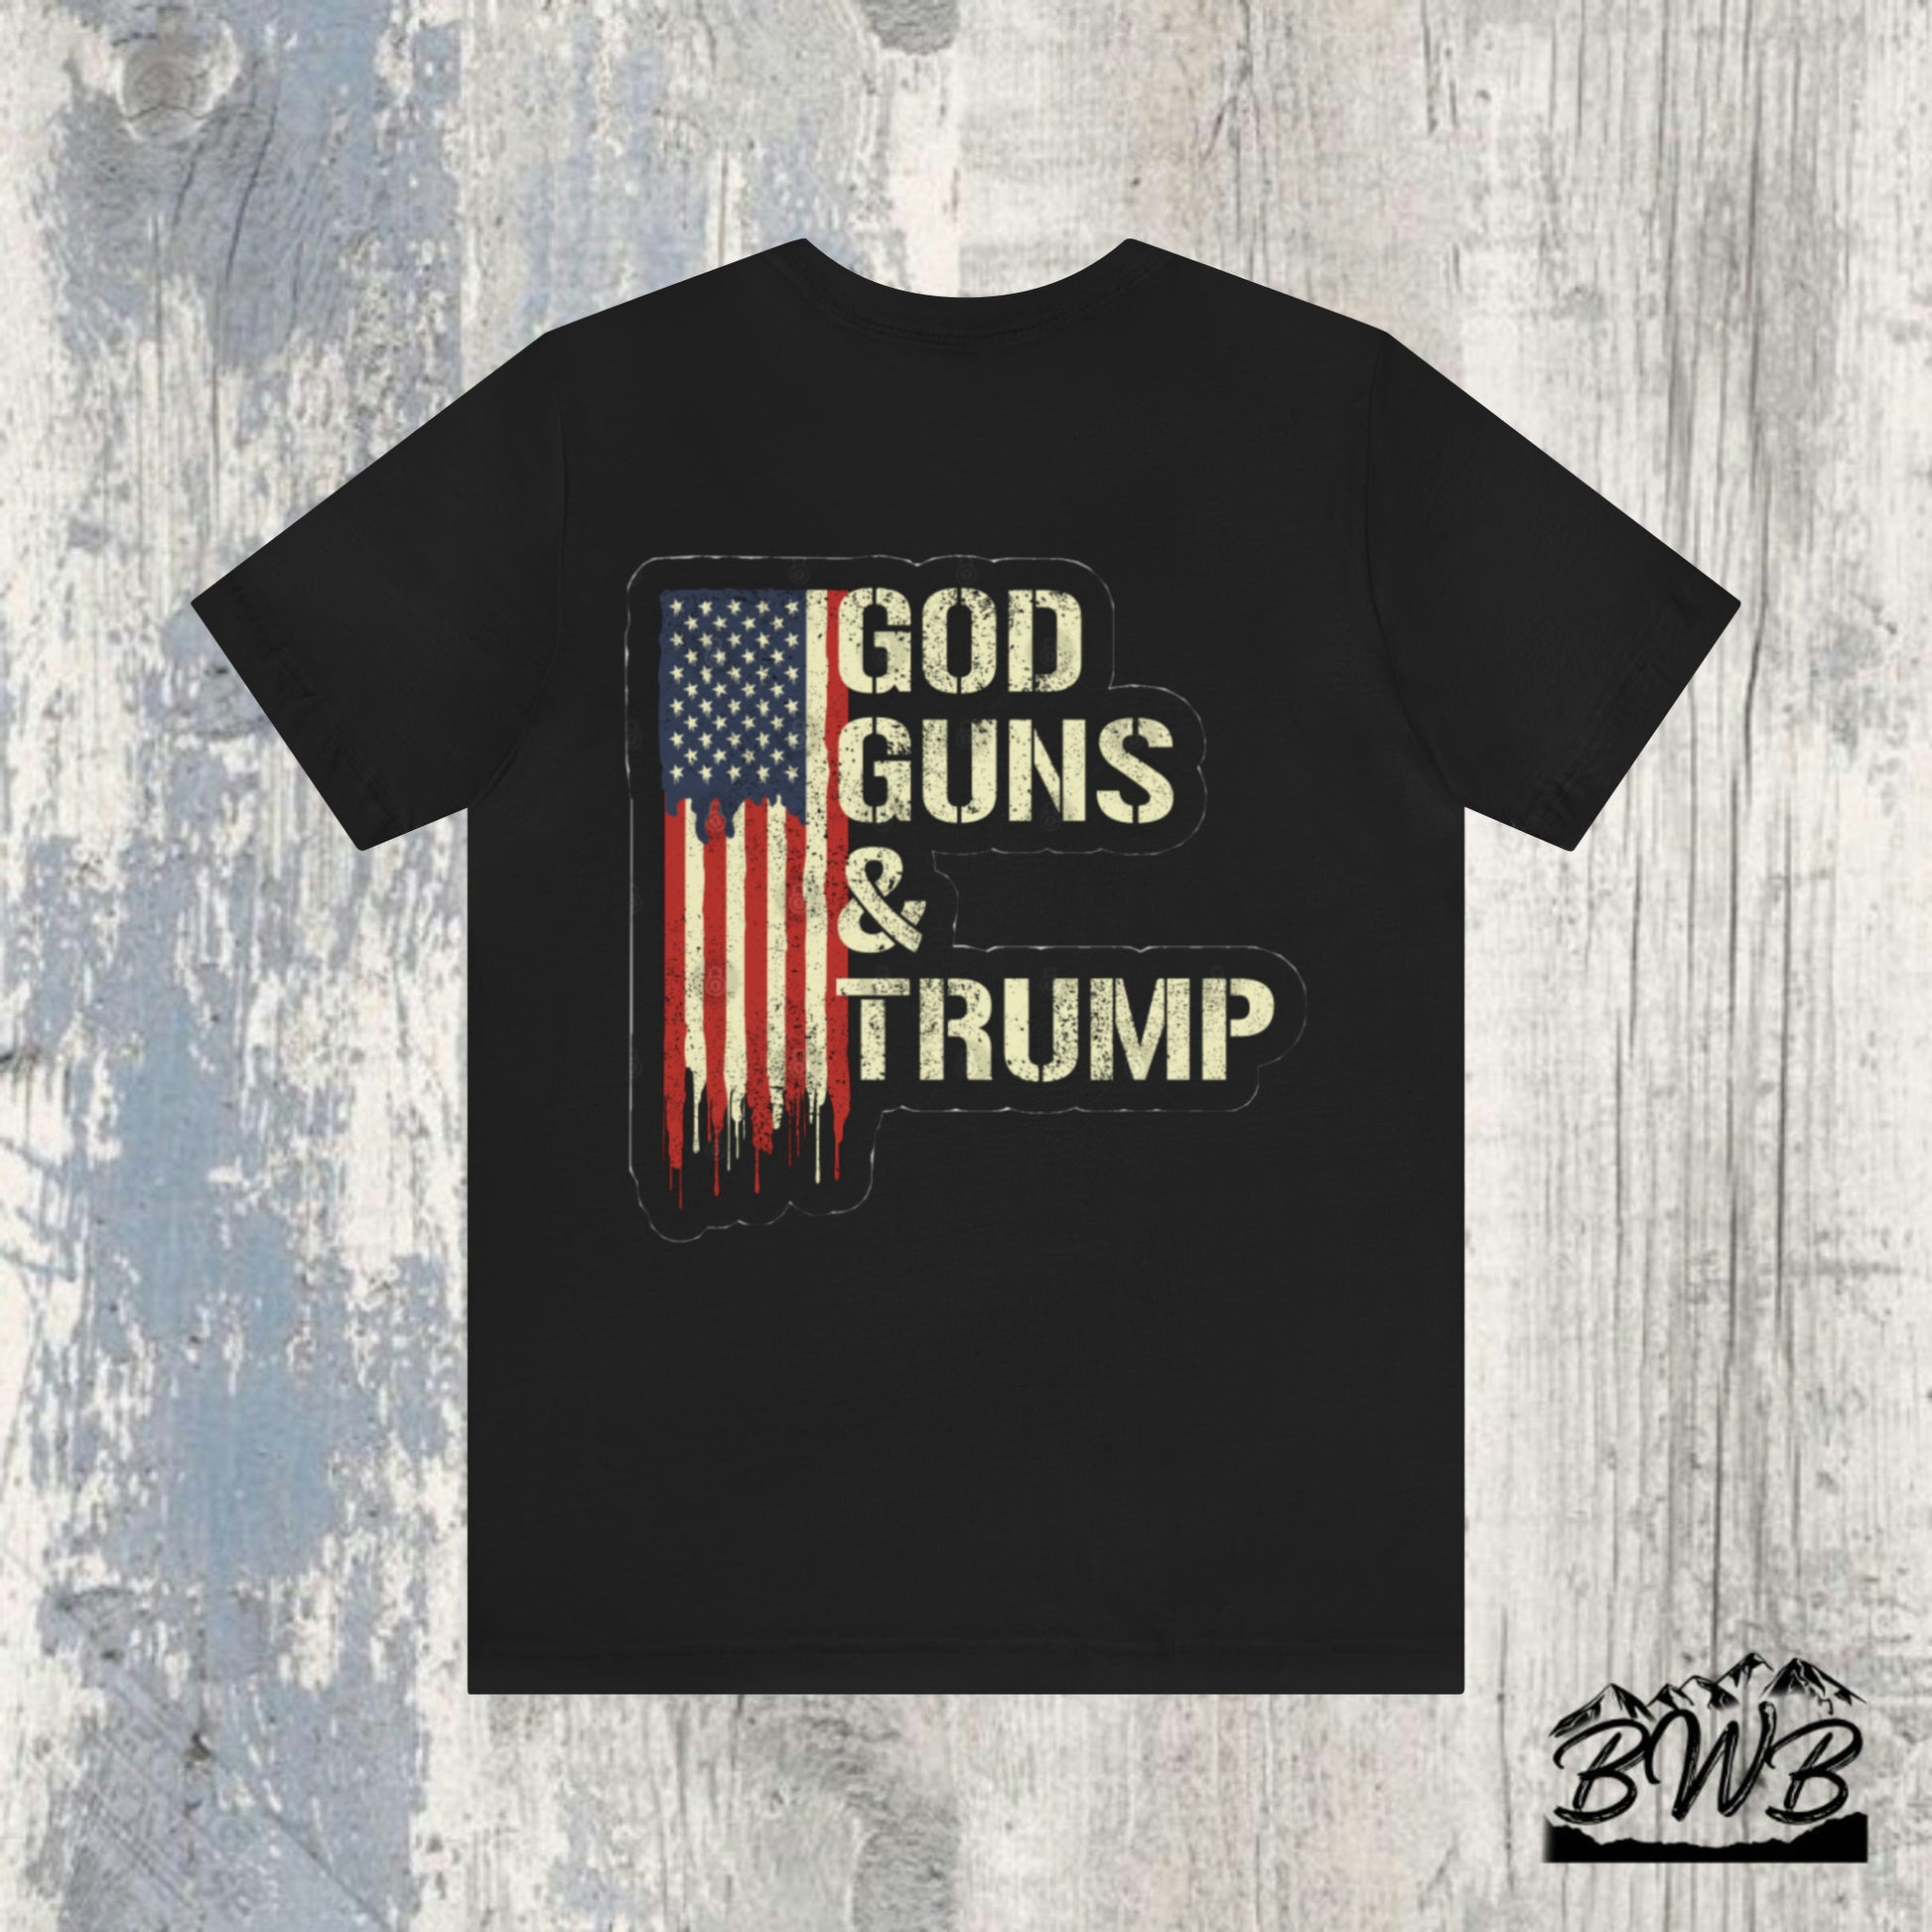 God, Guns, & Trump" Tee - Backwoods Branding Co.